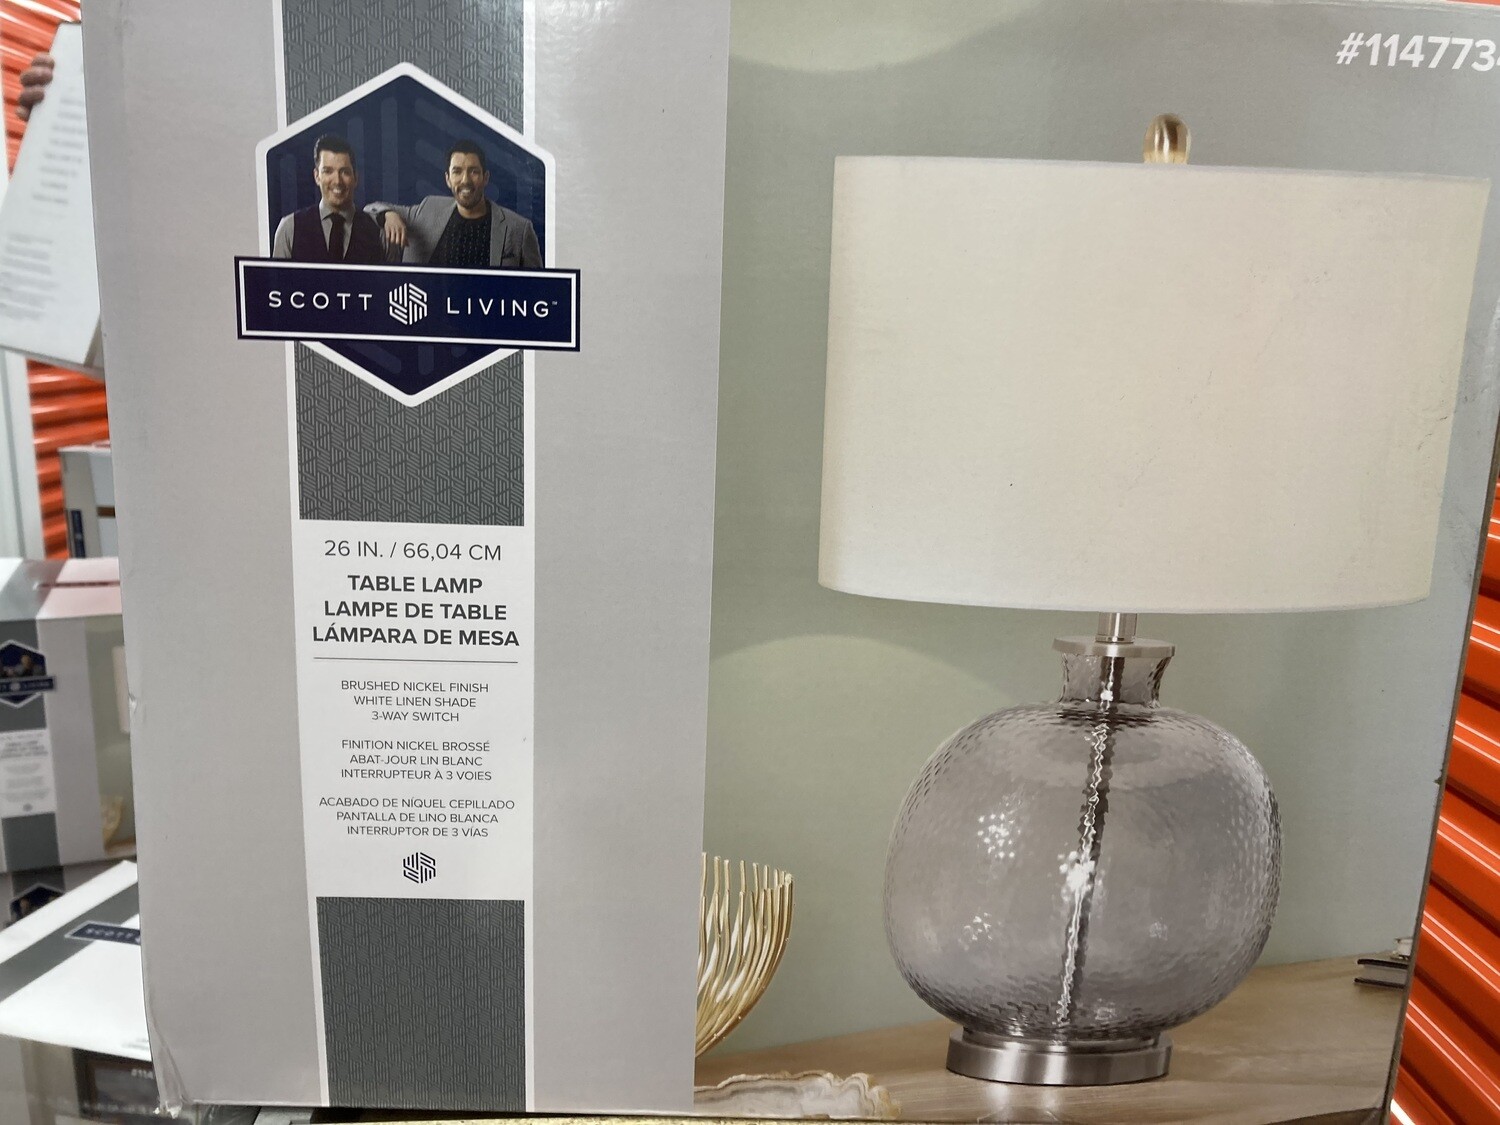 NEW Scott Living Table Lamp (1147734) #2133